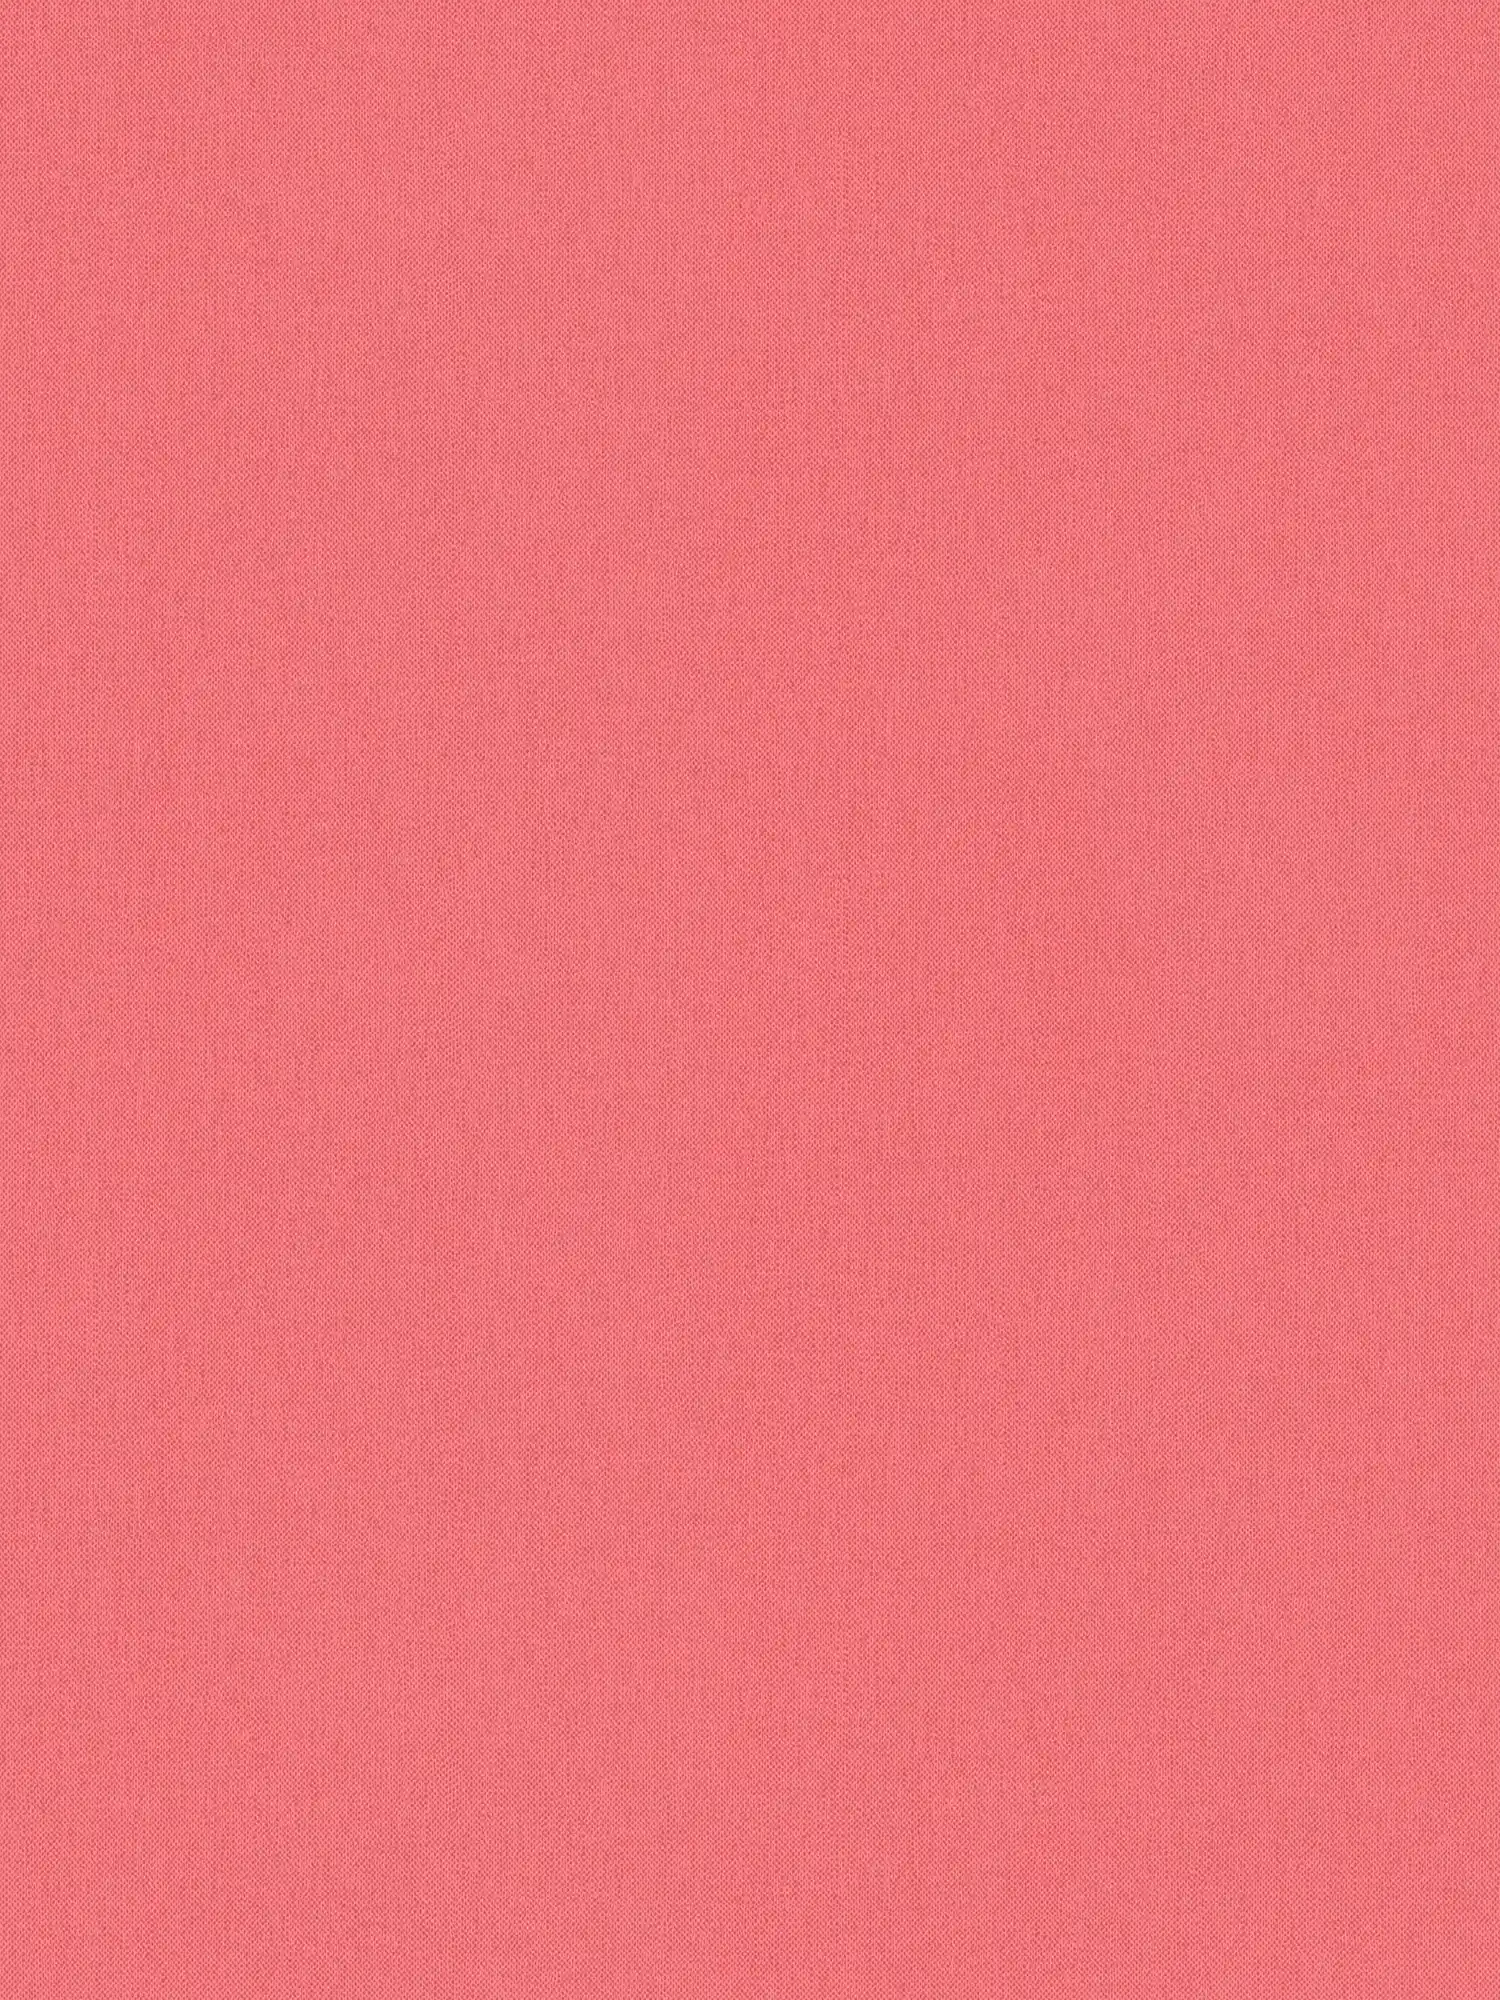 Carta da parati rosso salmone e rosa con struttura in lino tinta unita per la camera delle ragazze
